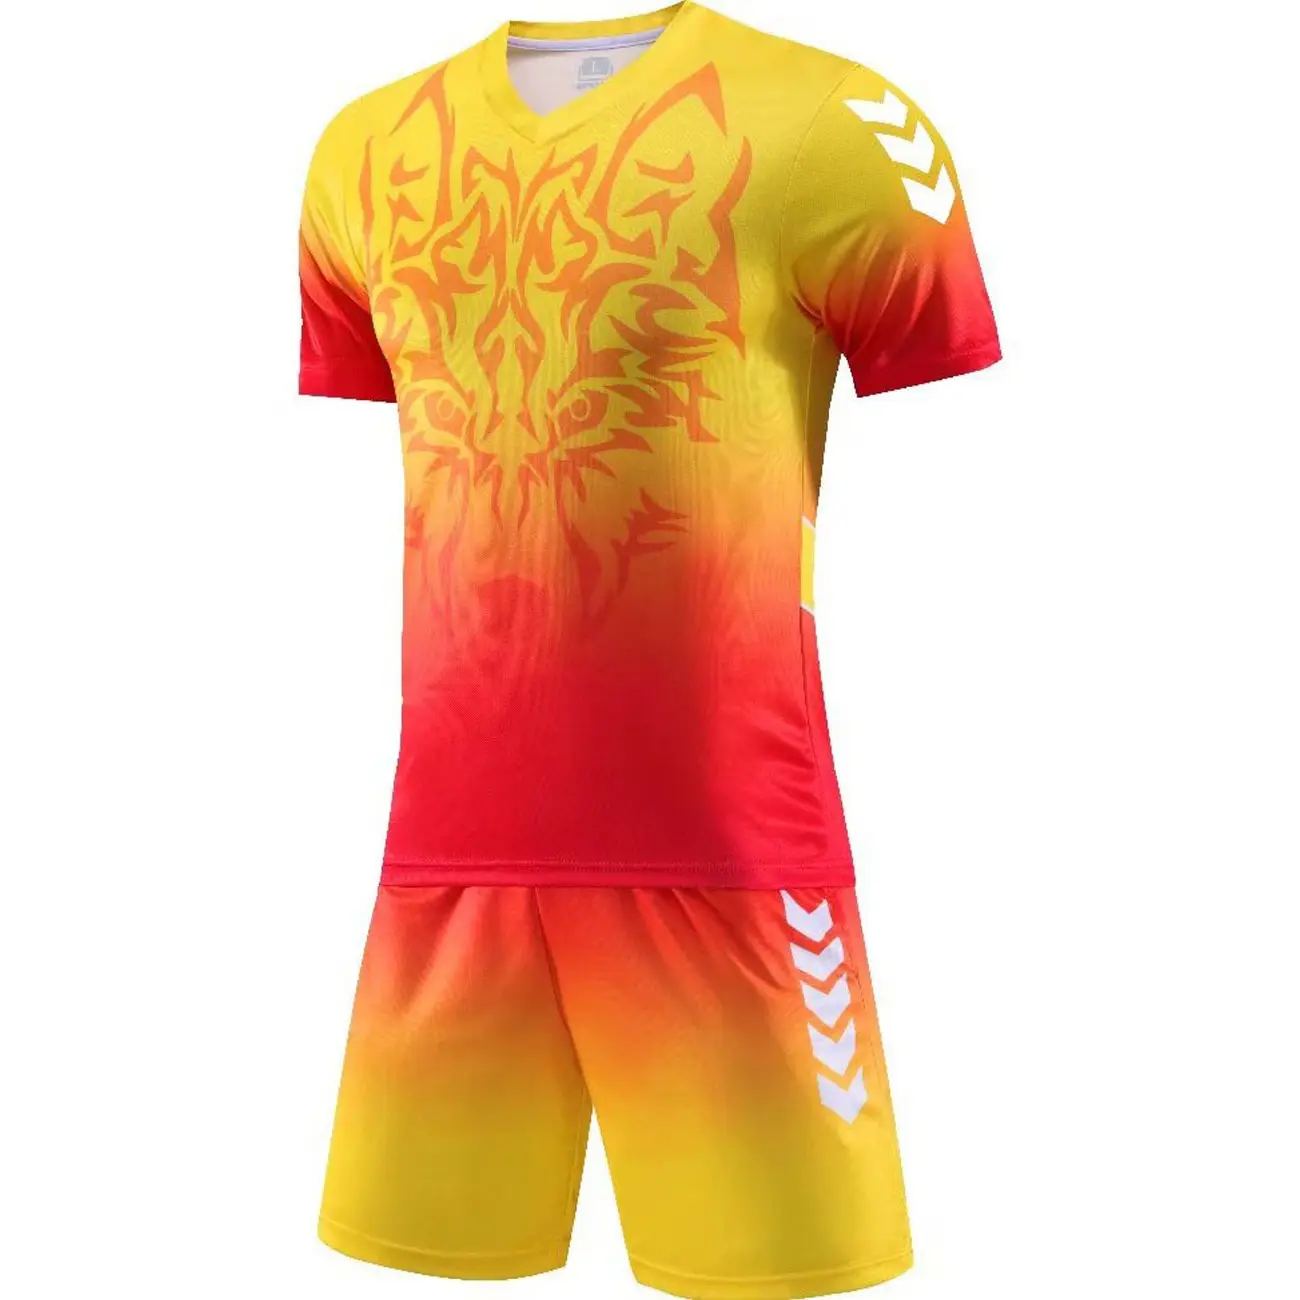 Nova sublimação impressão futebol jersey e shorts personalizado tipo personalizado sublimada futebol uniforme